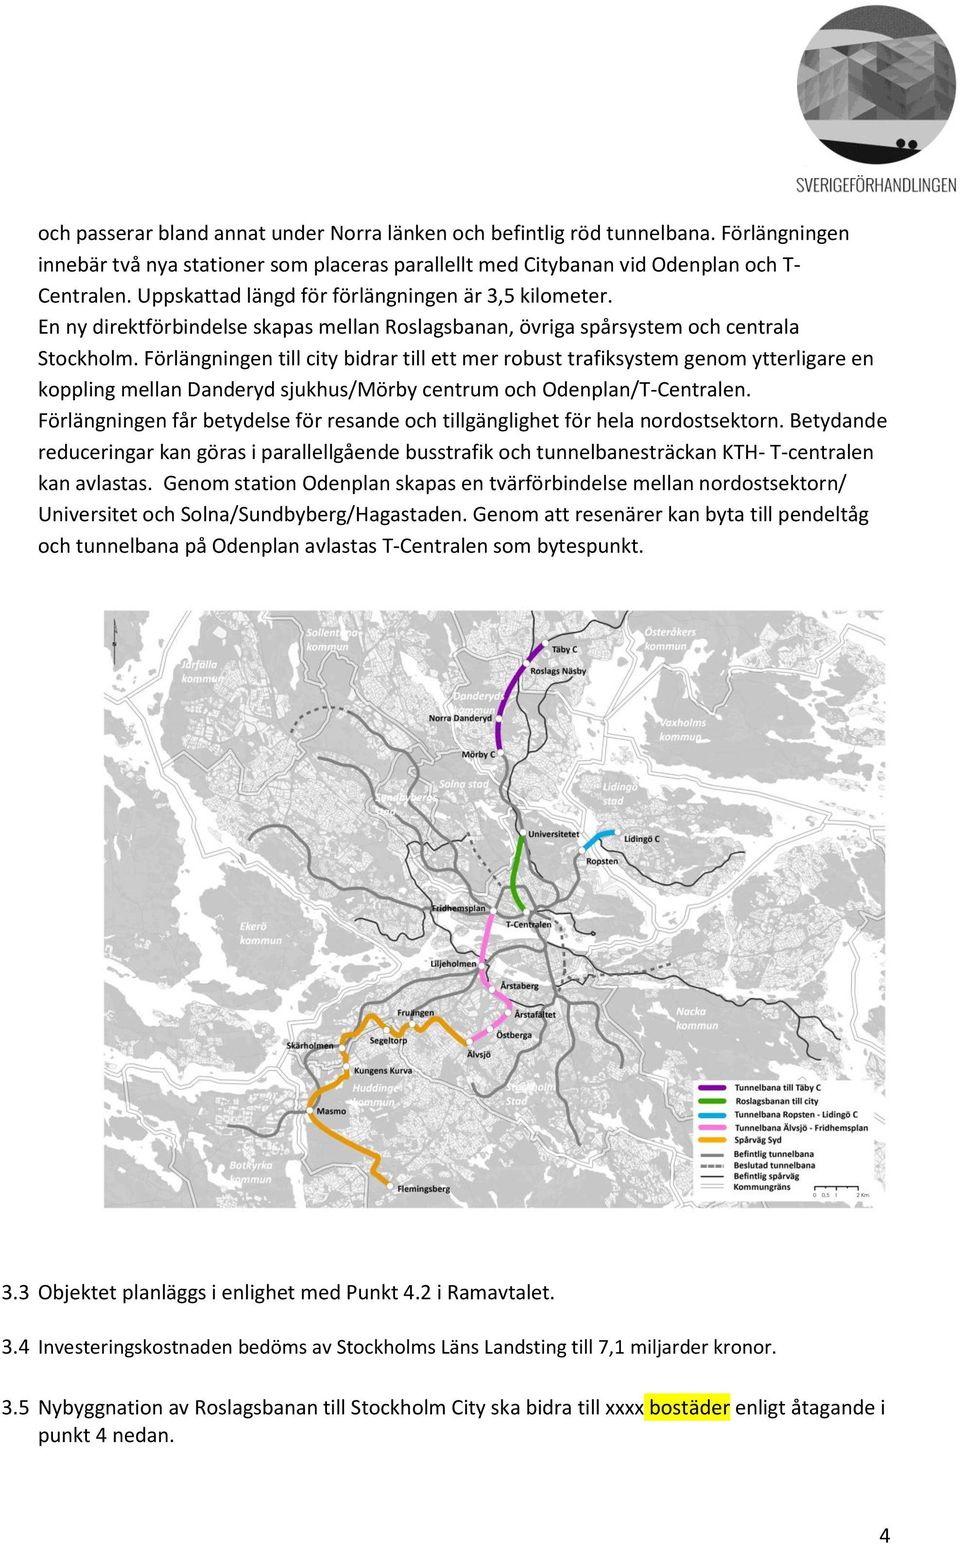 Förlängningen till city bidrar till ett mer robust trafiksystem genom ytterligare en koppling mellan Danderyd sjukhus/mörby centrum och Odenplan/T-Centralen.